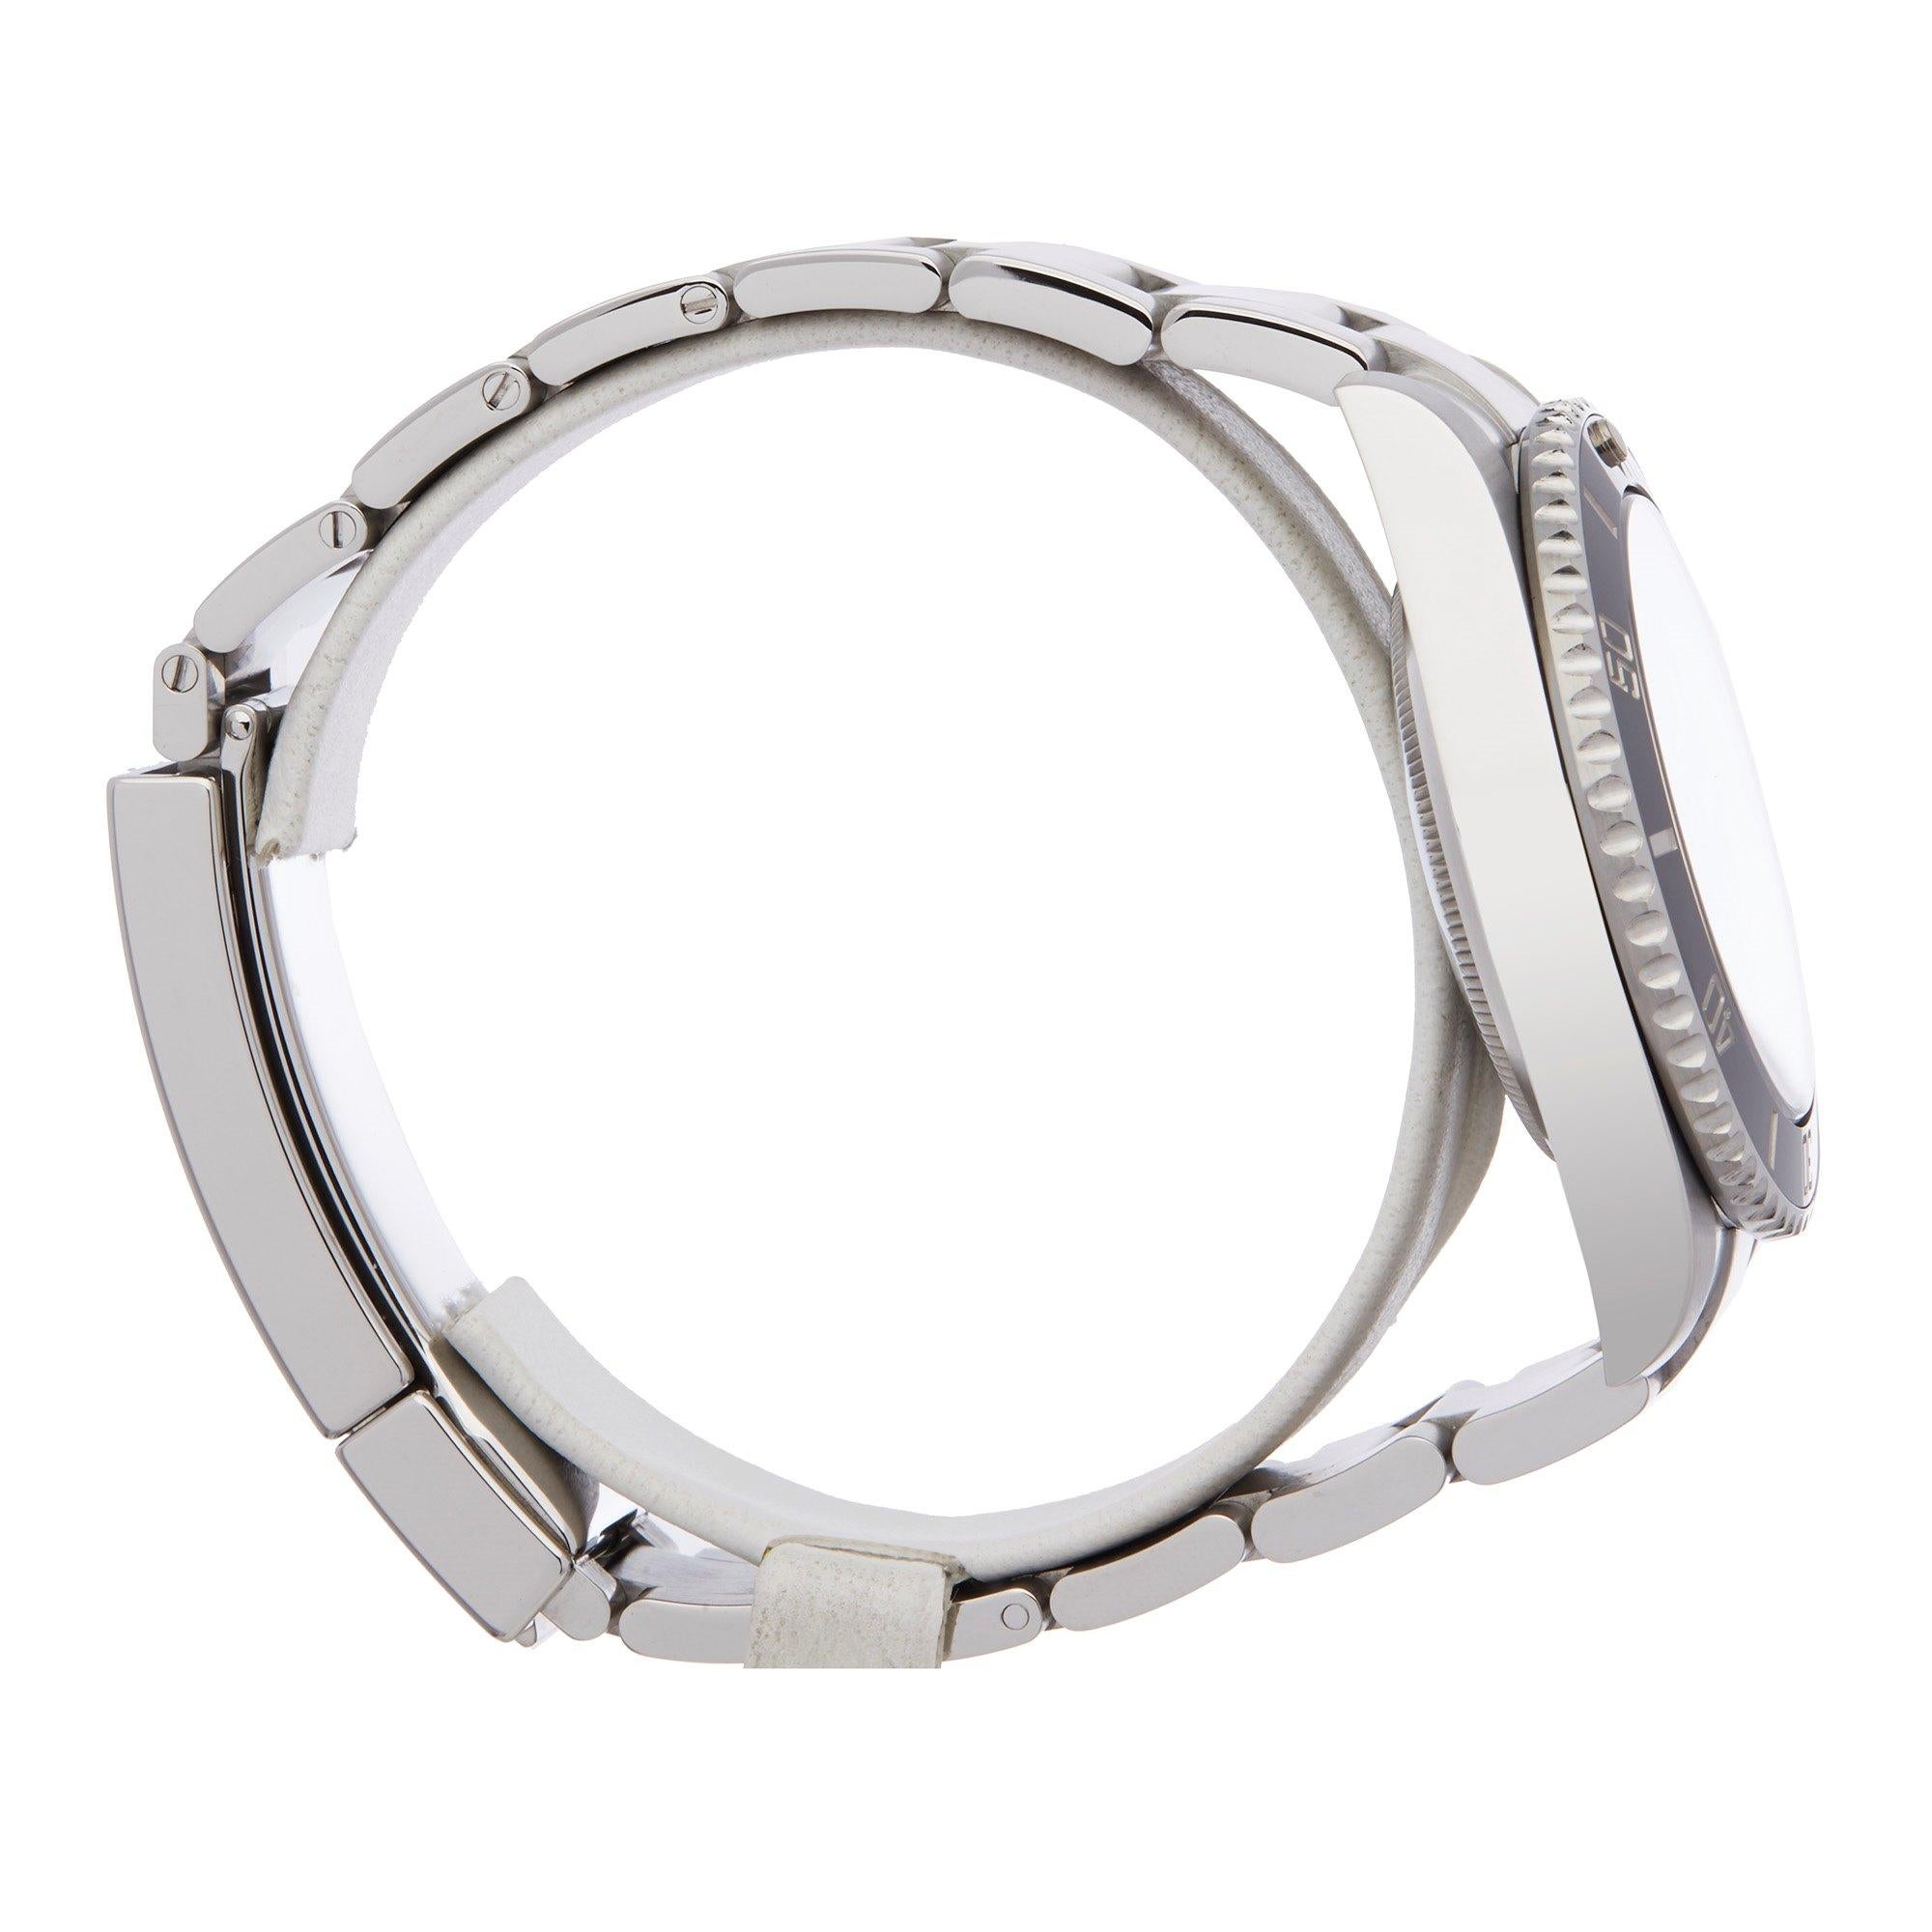 Rolex Submariner Non-Date 114060 Men's Stainless Steel Watch 1